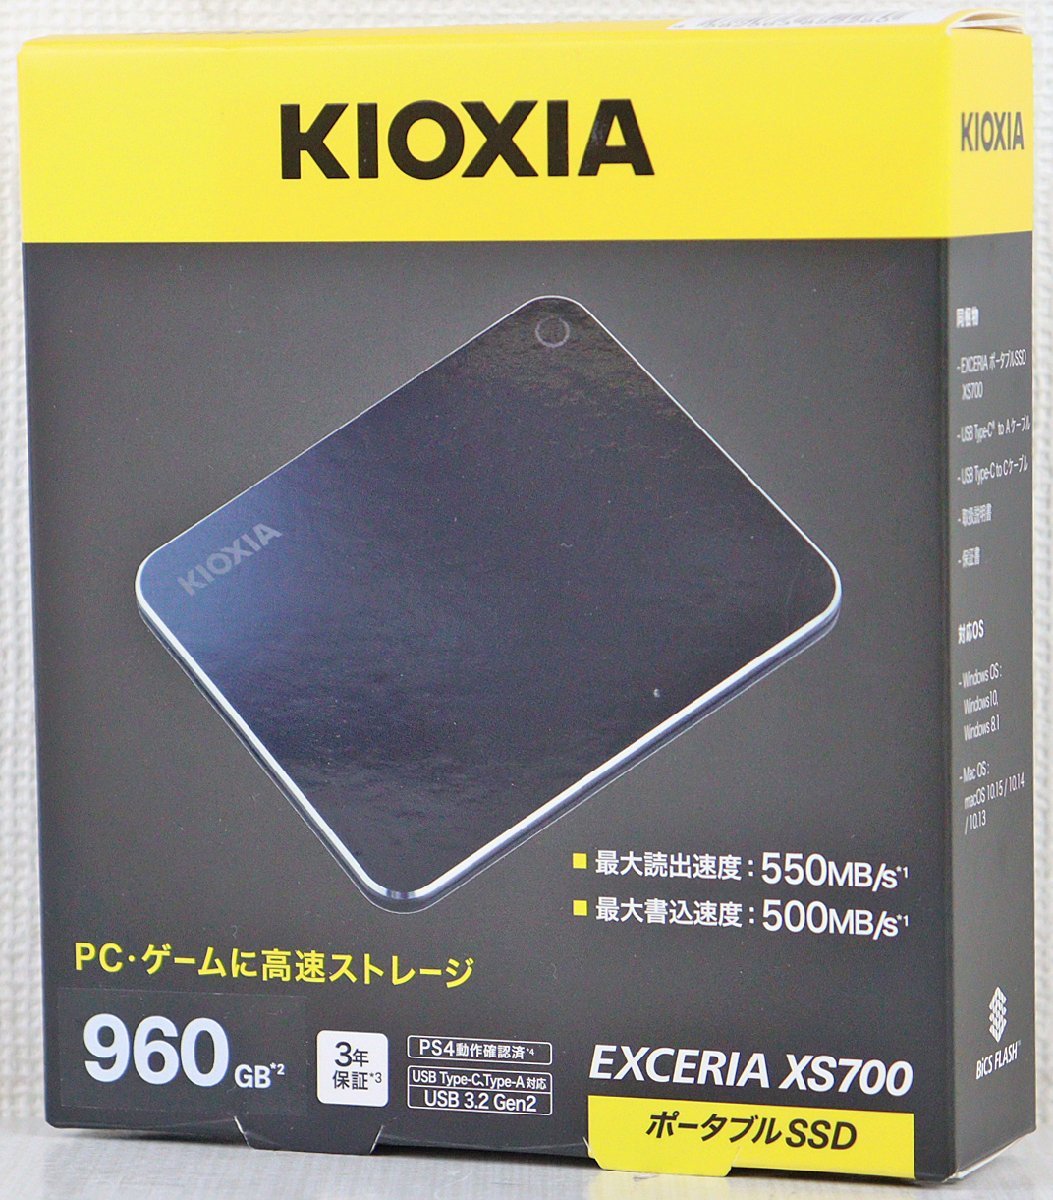 ヤフオク! - S 中古品 ポータブルSSD『EXCERIA XS700』 KIOXI